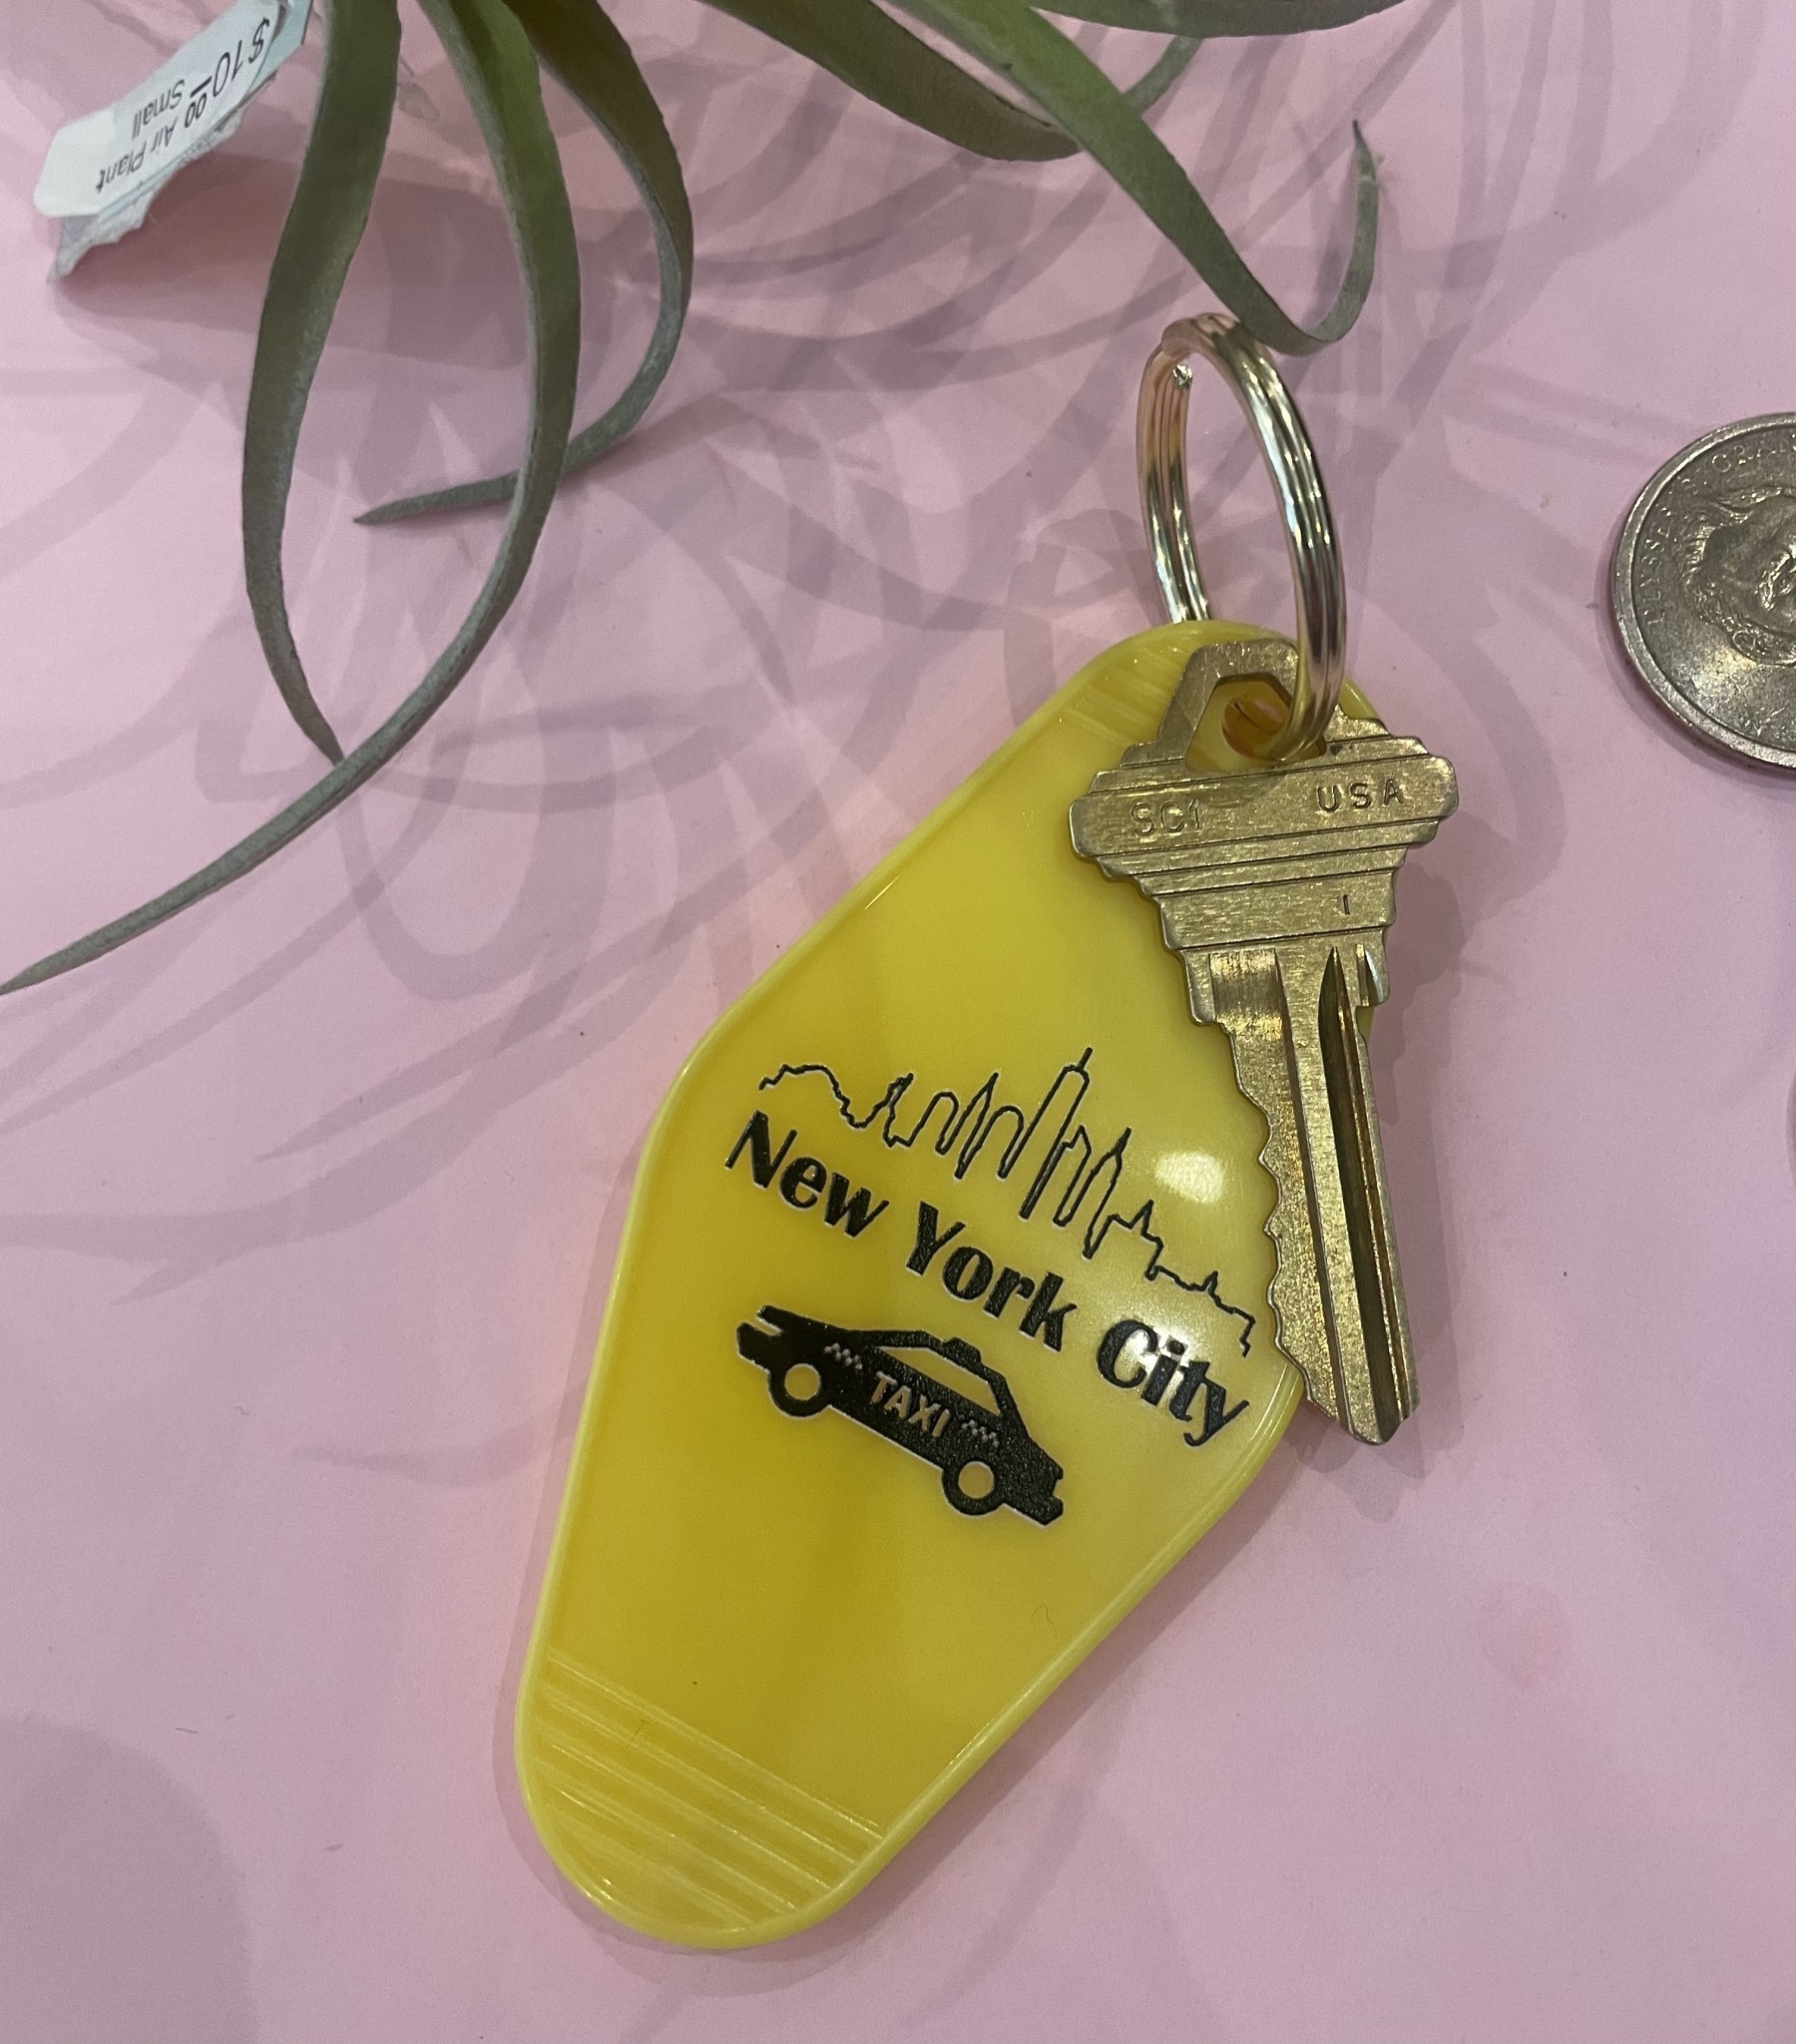 NYC Motel Key Tag : An Old School Souvenir